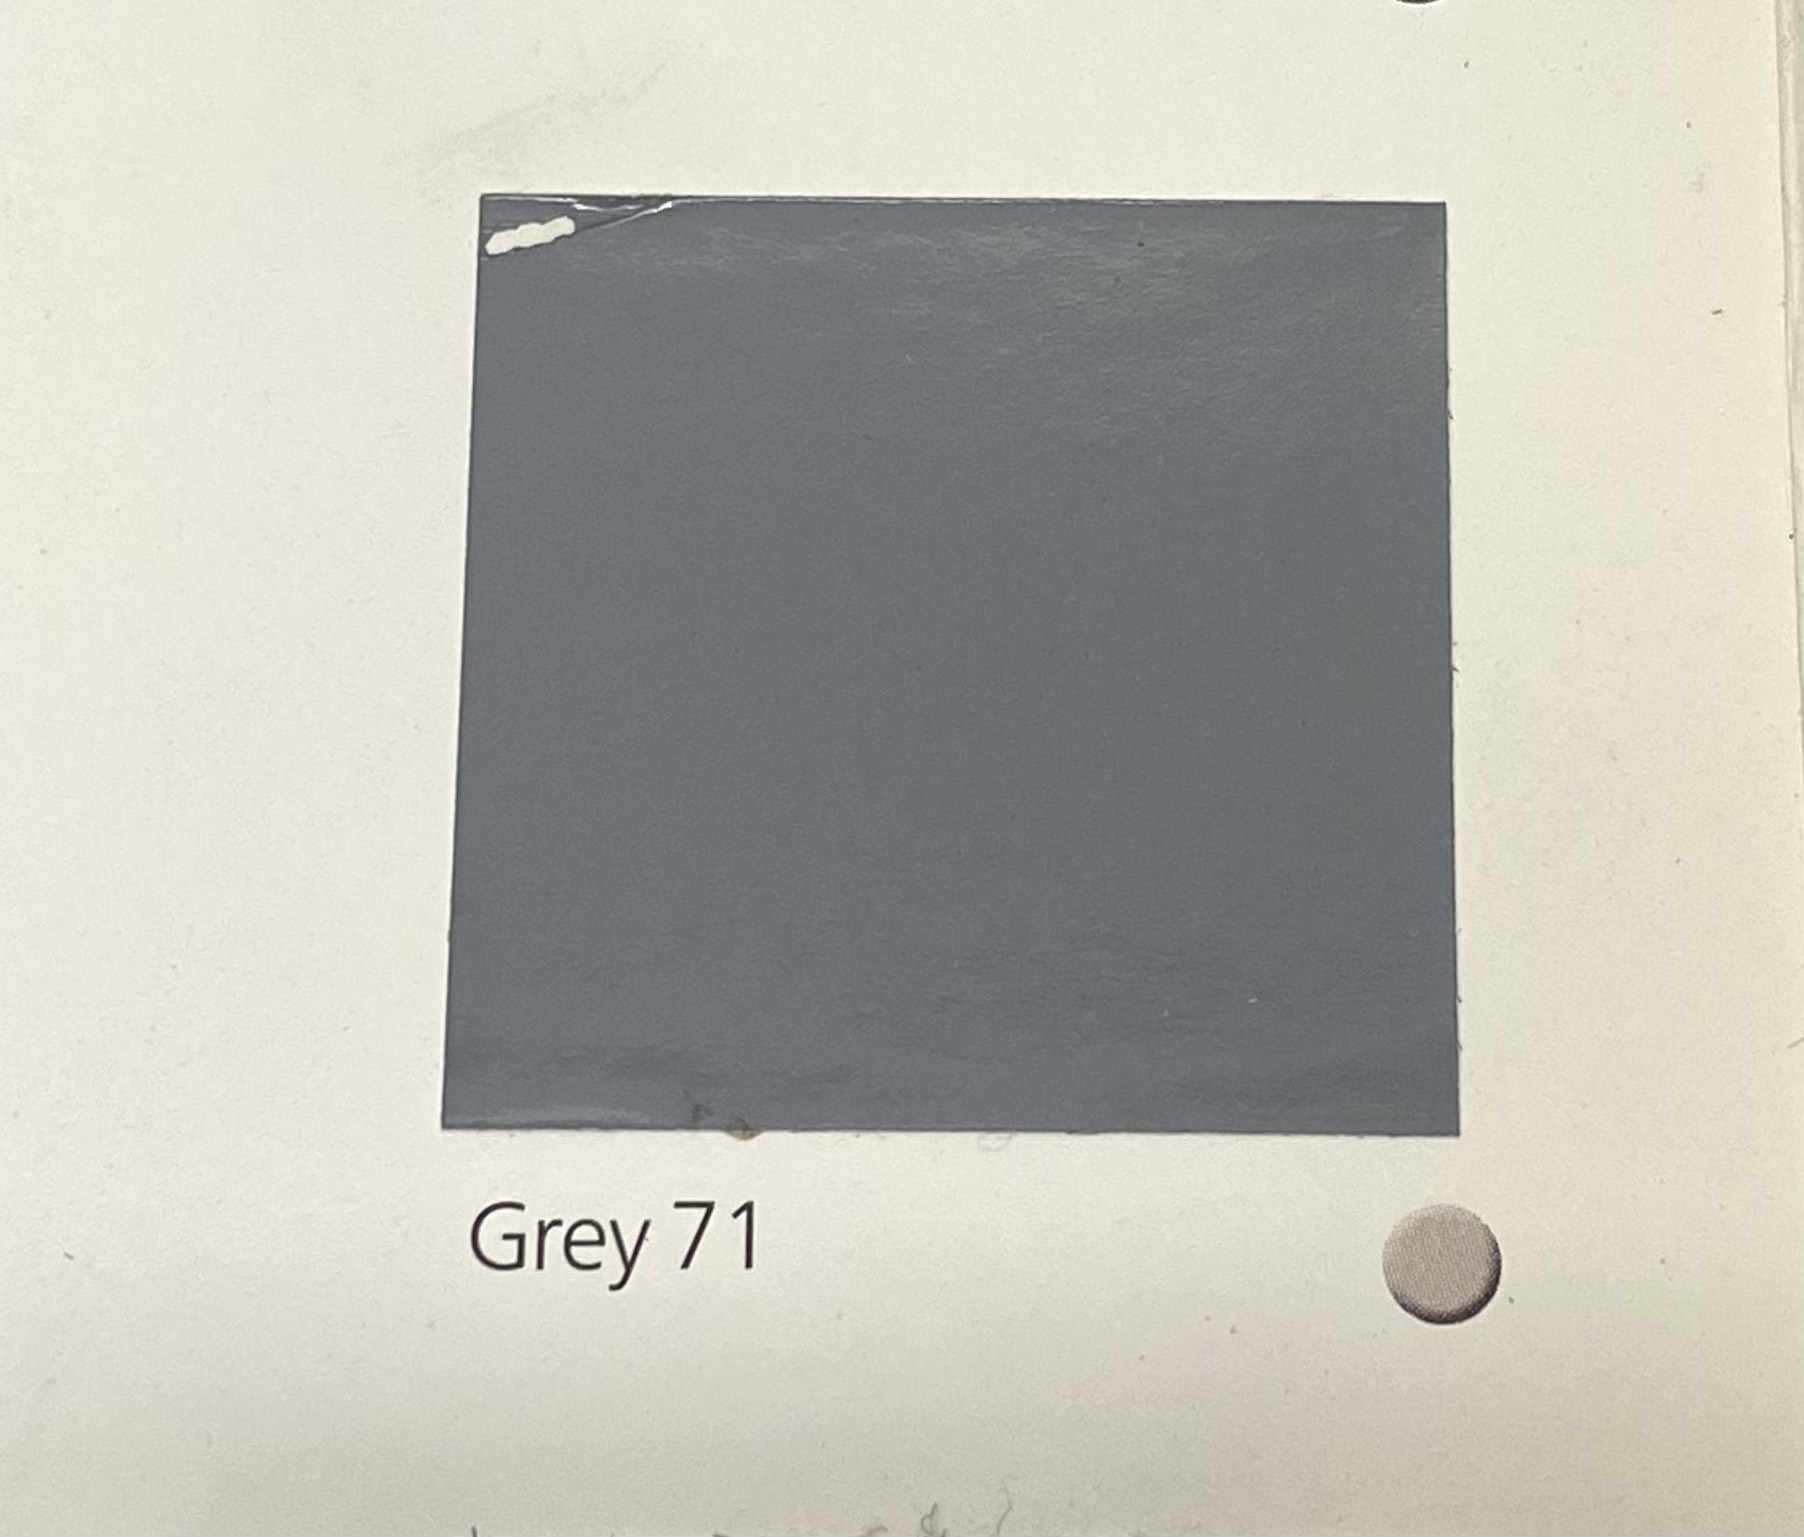 Sơn chịu nhiệt 600oC Jotun Solvalitt màu xám Grey 71 _ 5L